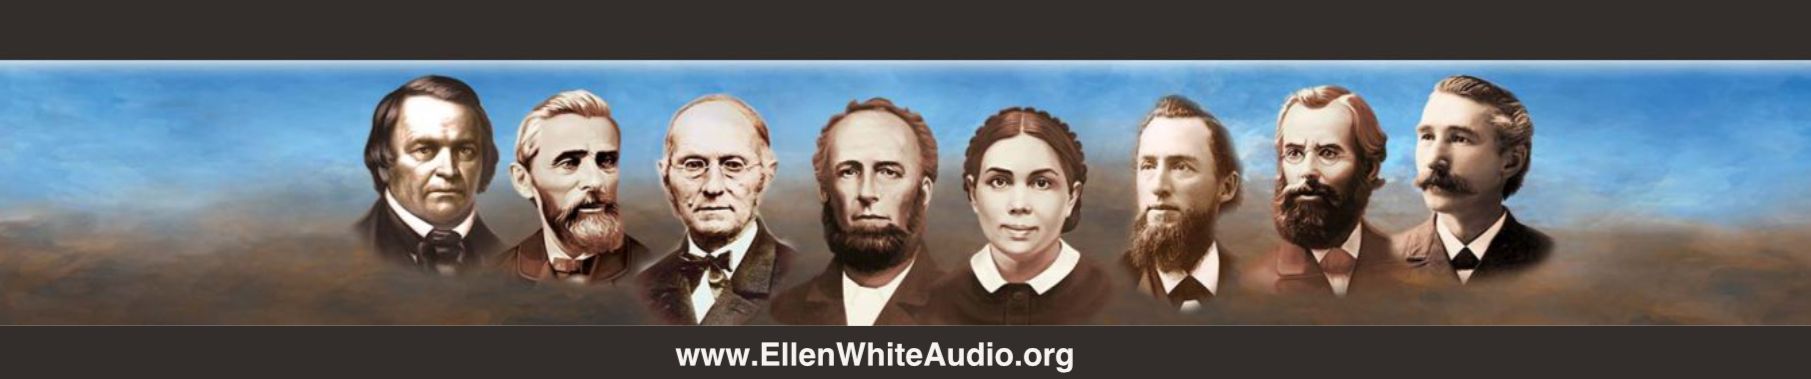 Eventos Finais – Ellen White Audio – Português